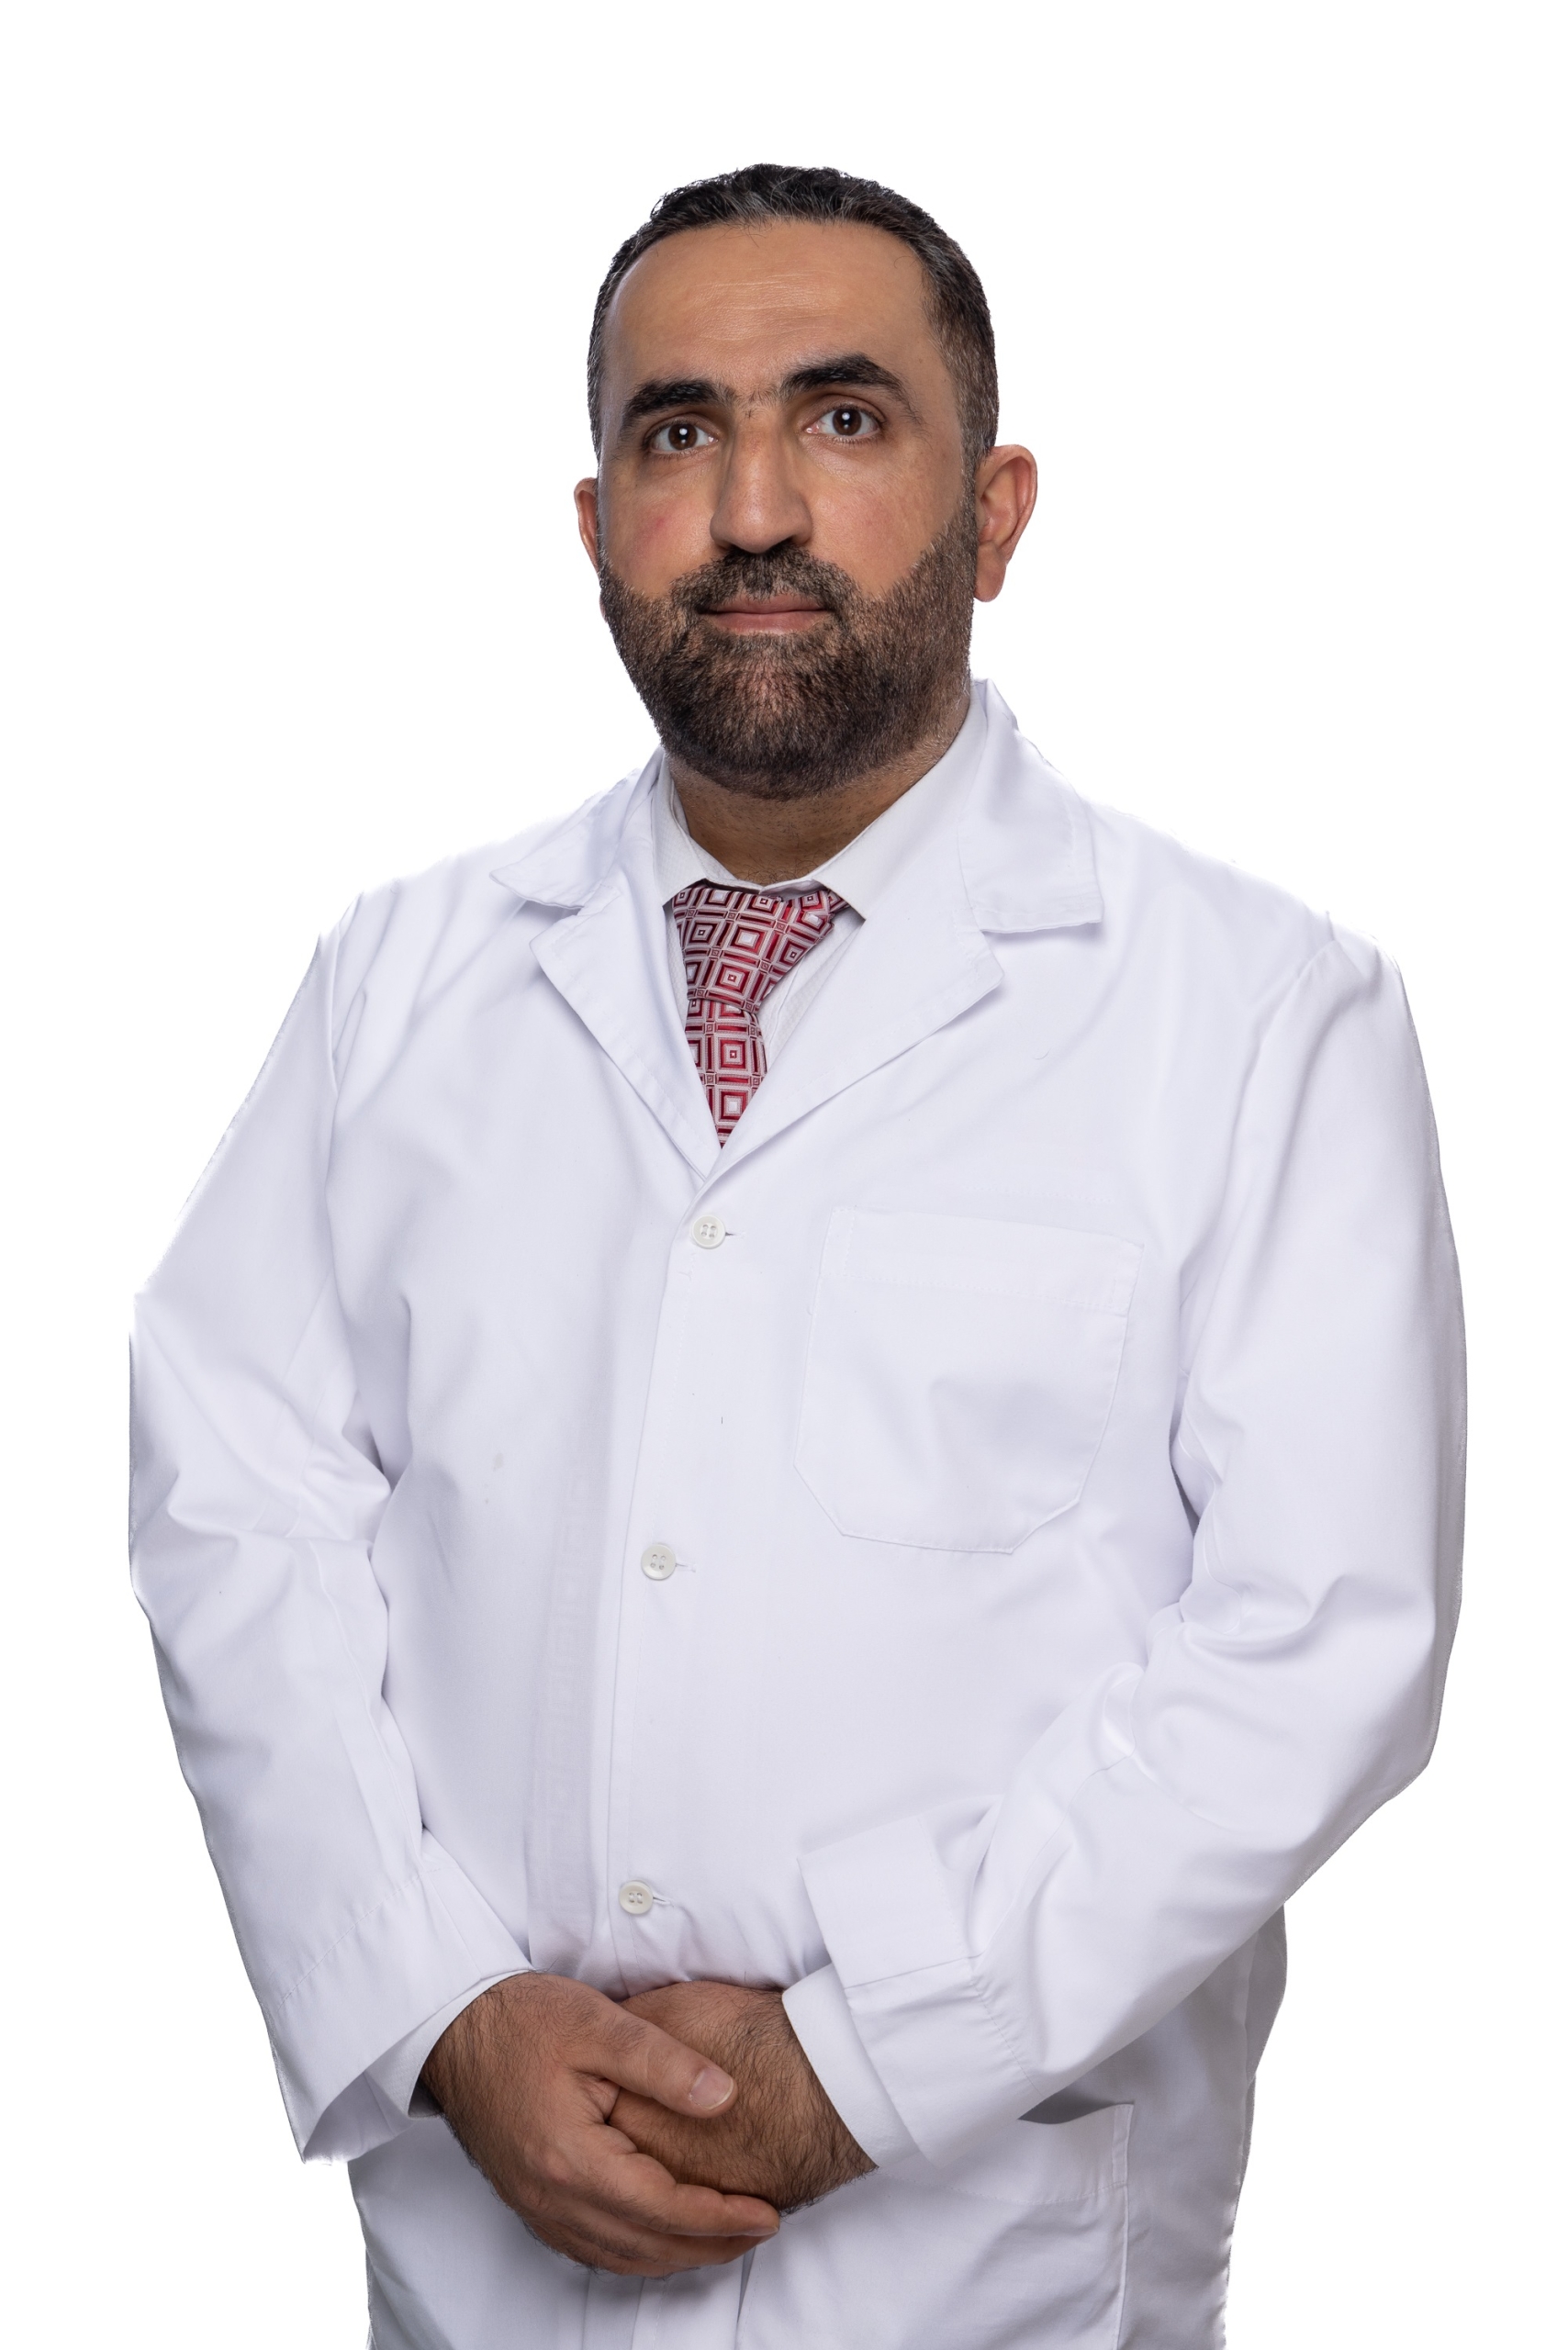 Dr. Rami Mohamad Hani Barjas